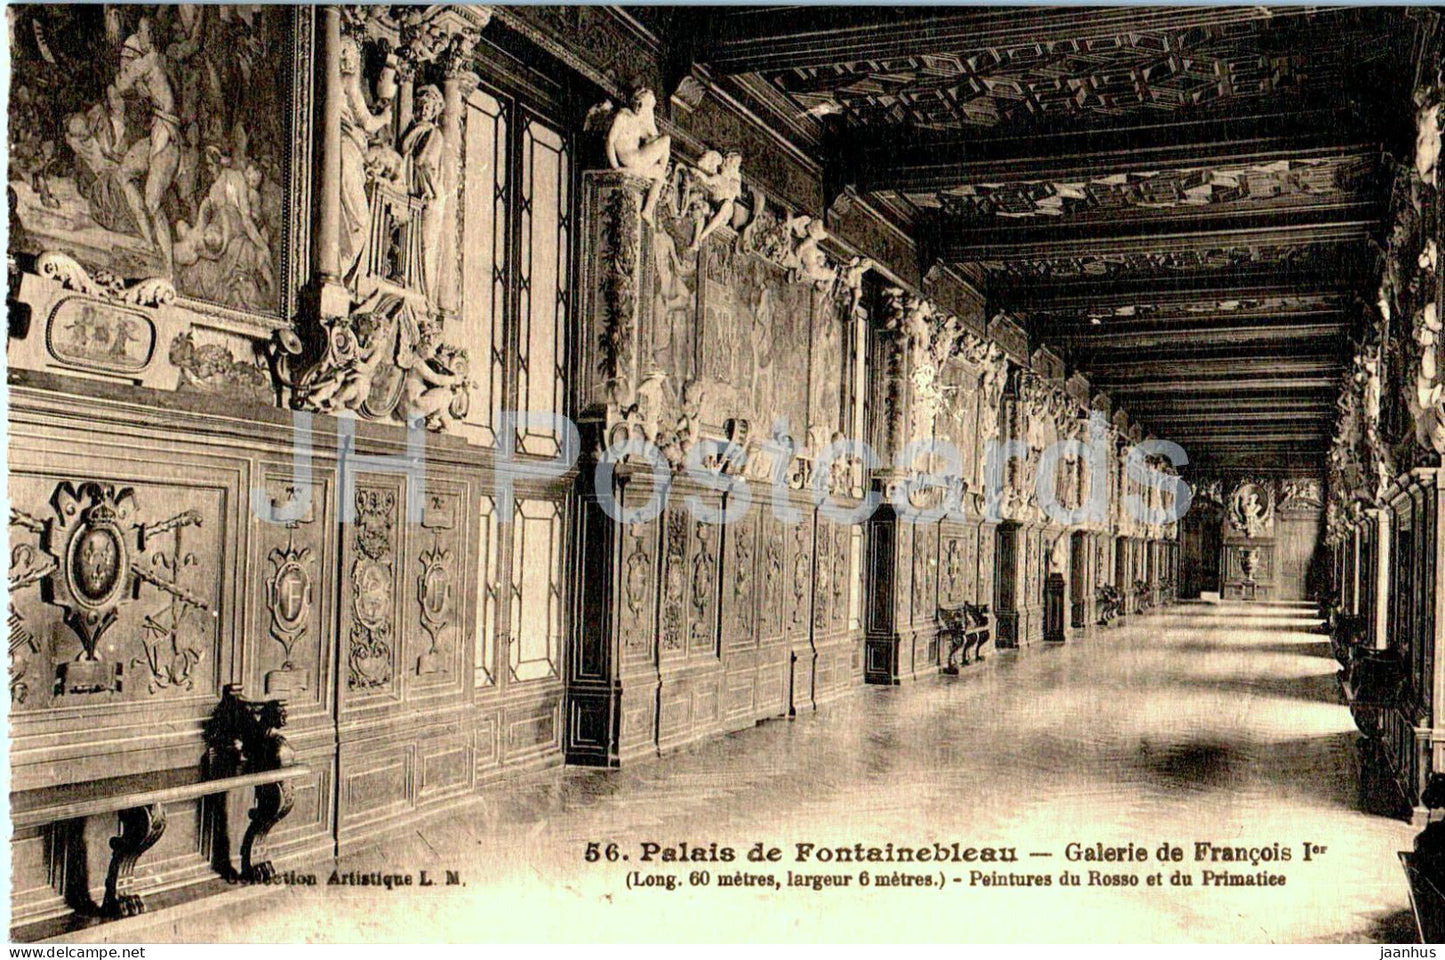 Palais de Fontainebleau - Galerie de Francois I - 56 - old postcard - France - unused - JH Postcards